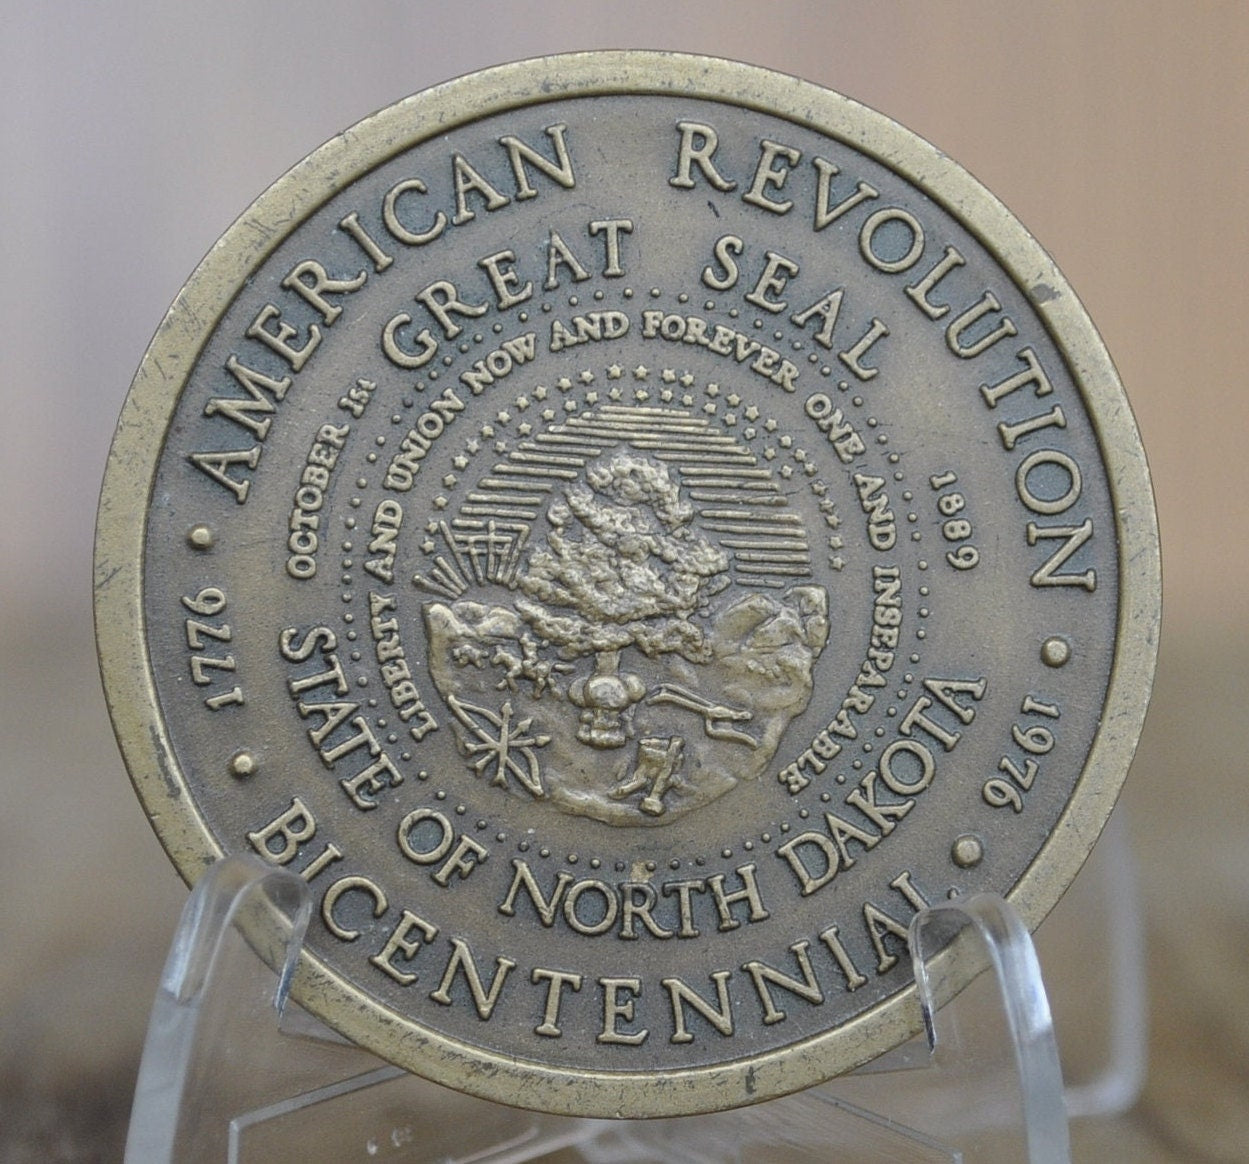 1976 State of North Dakota Bicentennial Medal - Bronze - North Dakota Anniversary Medal - Vintage Bronze Medal 1776-1976